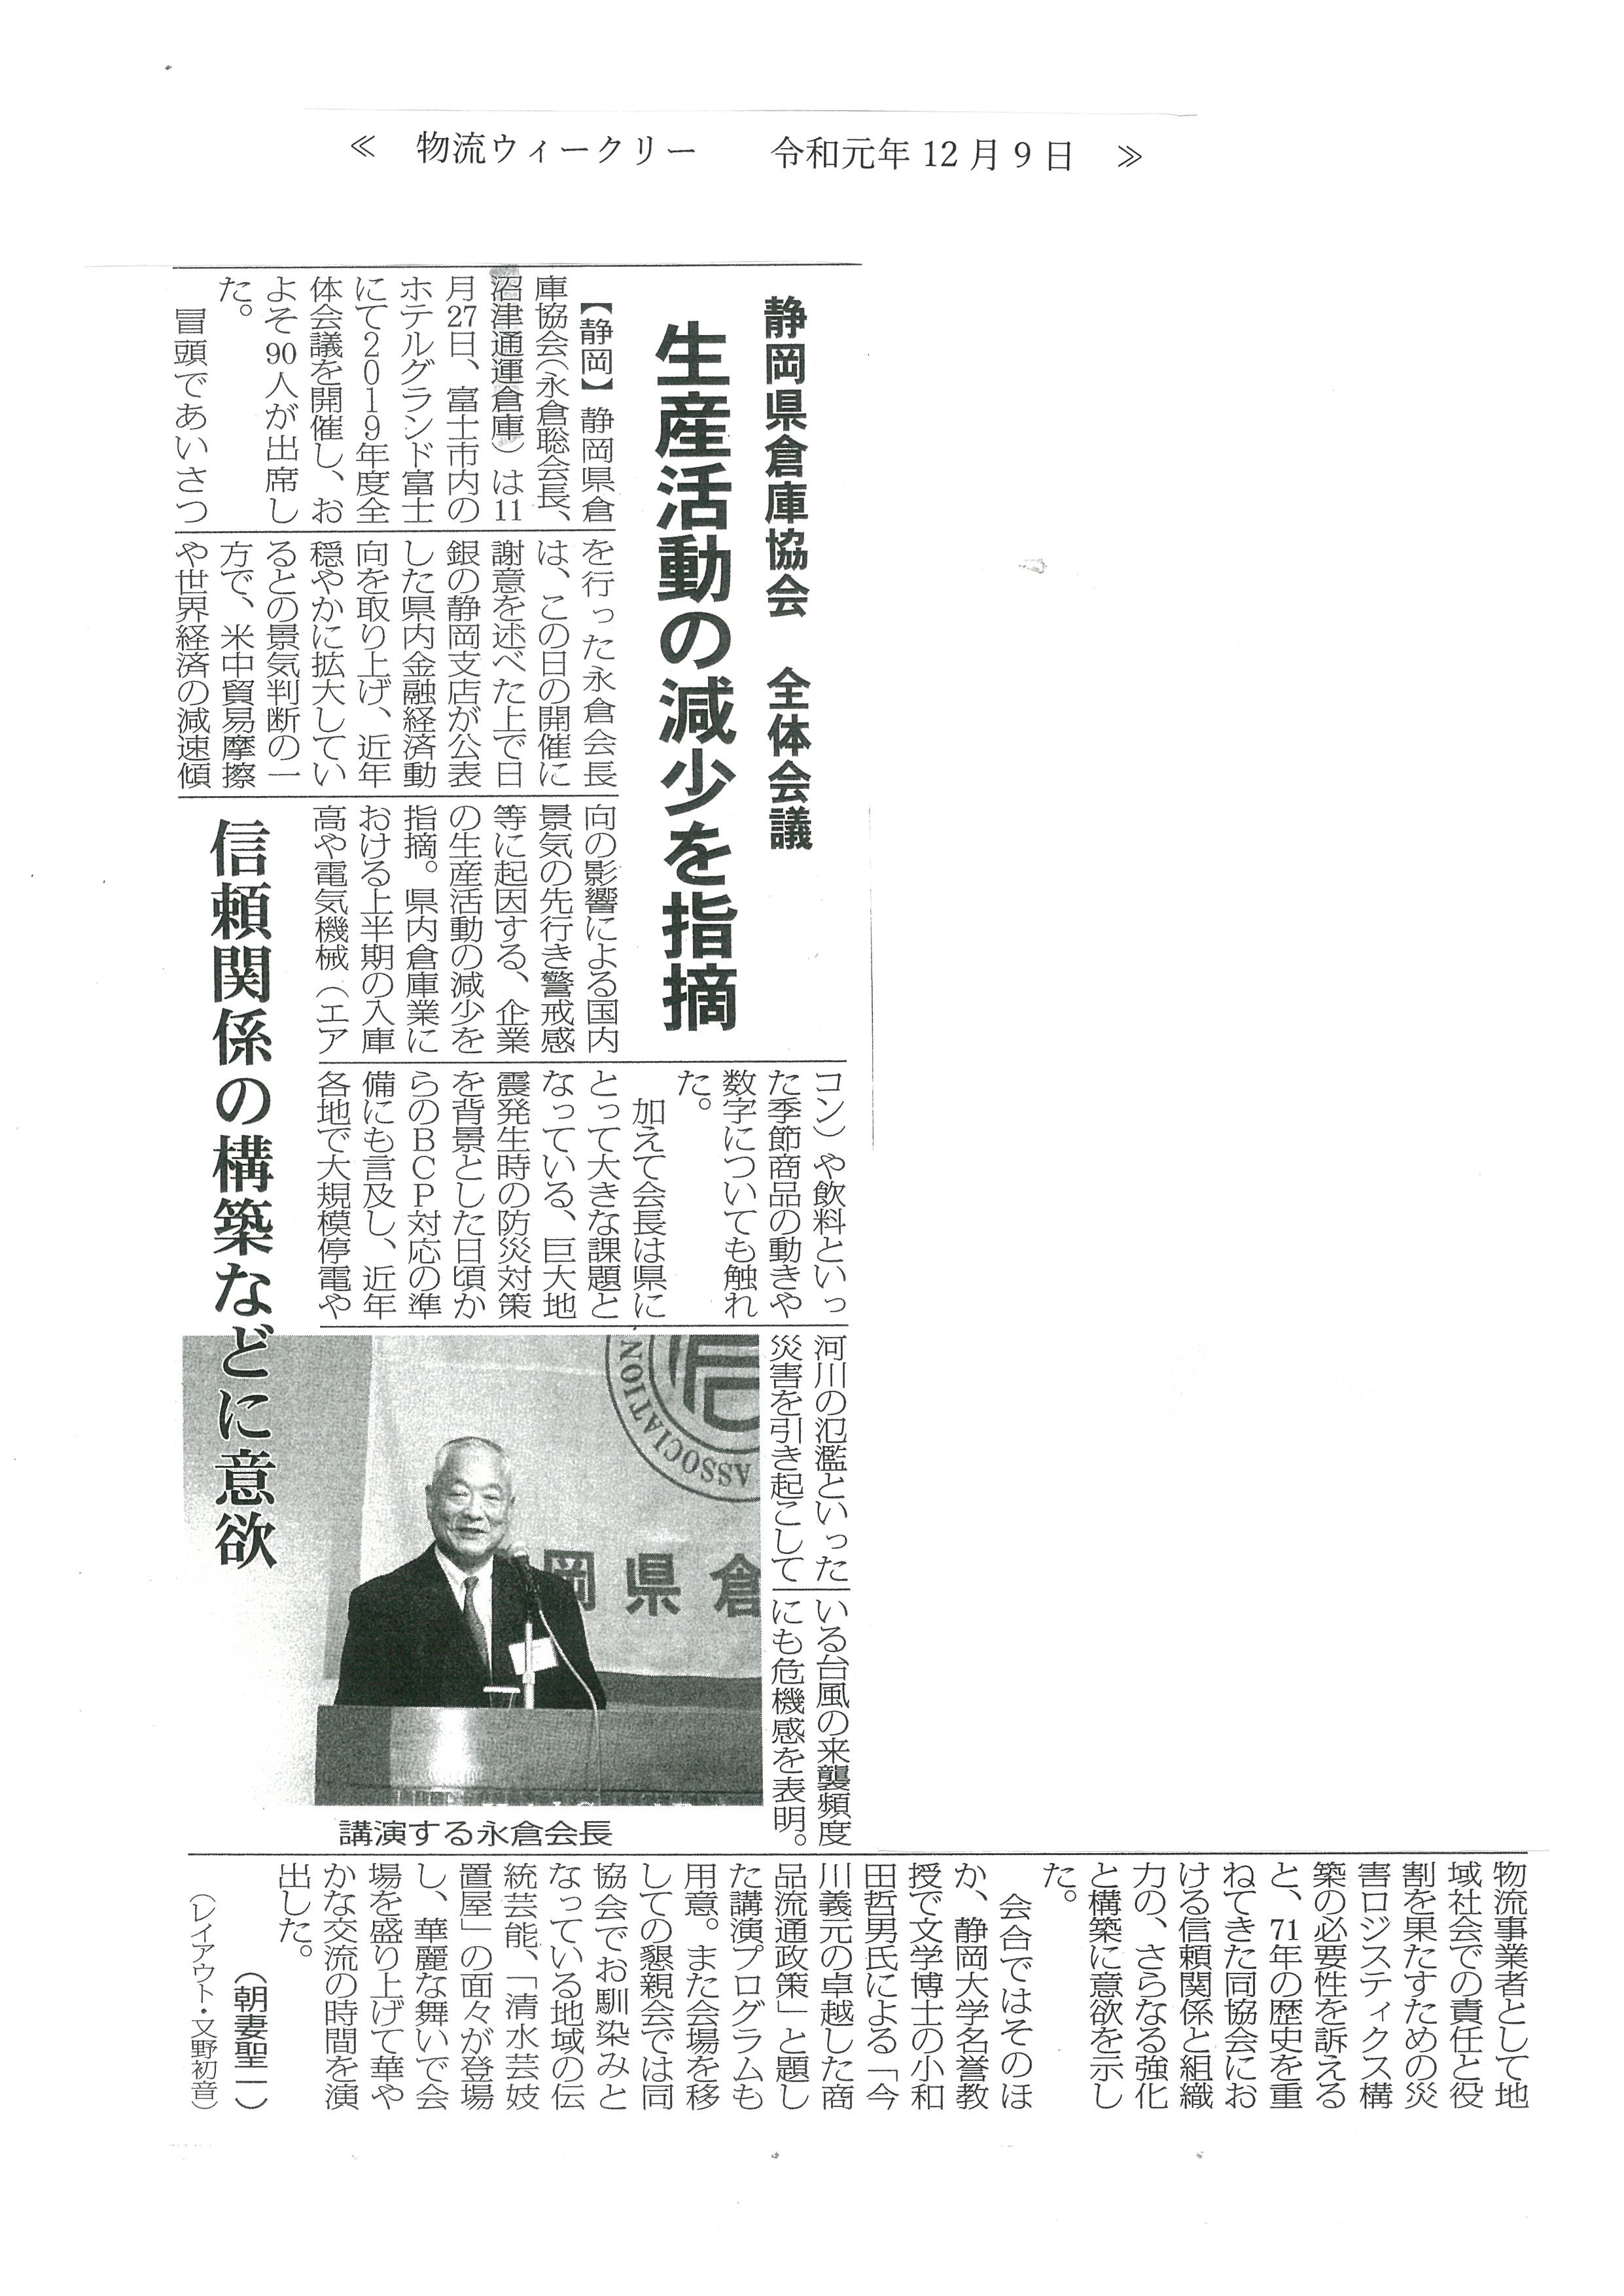 物流ウィークリー記事　静岡県倉庫協会全体会議で永倉会長が生産活動の減少を指摘